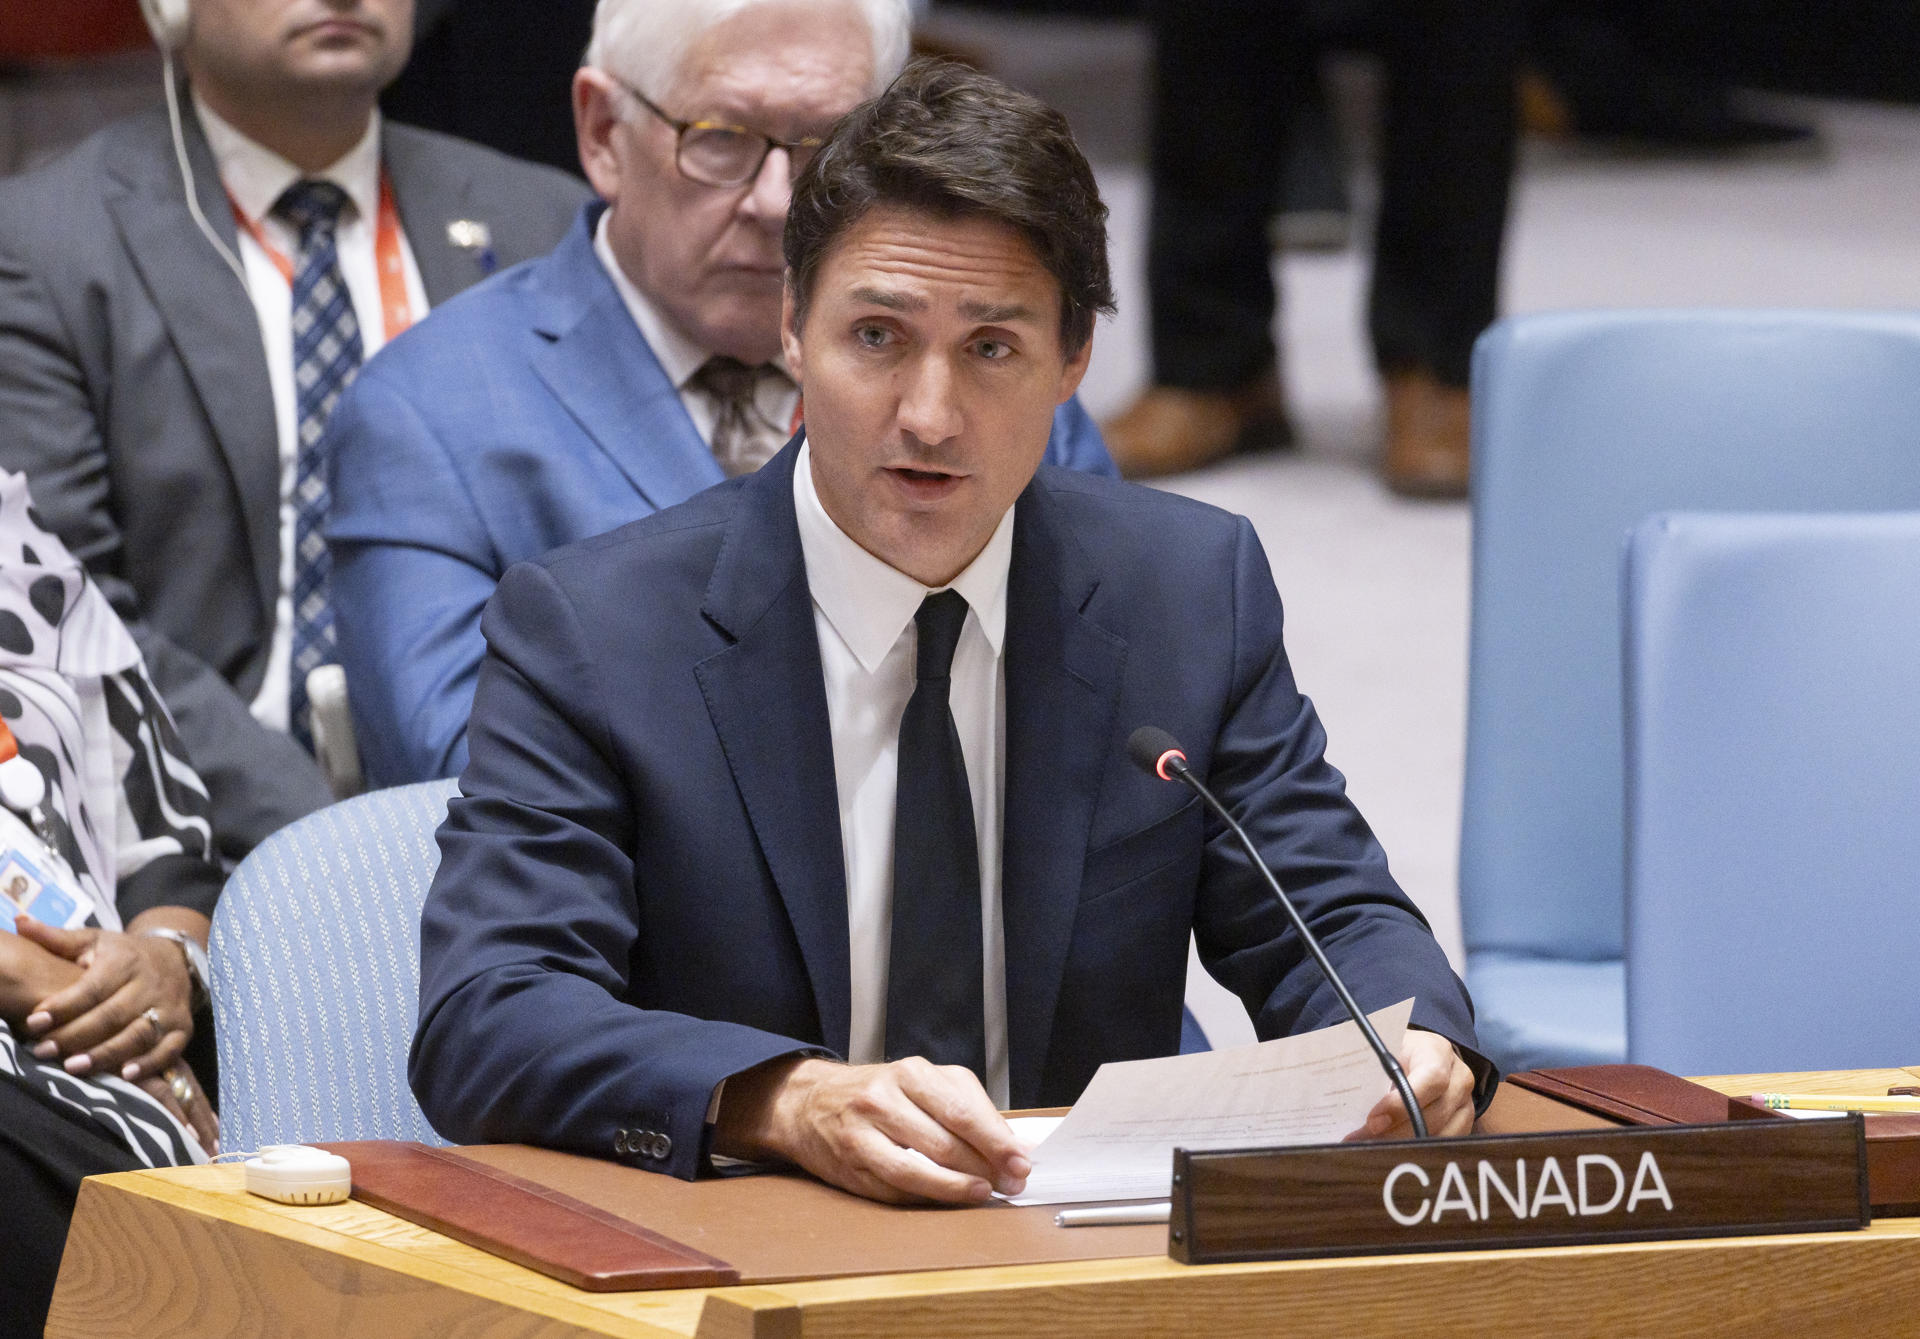 Fotografía de archivo del 20 de septiembre de 2023 donde aparece el primer ministro de Canadá, Justin Trudeau, mientras habla durante una reunión del Consejo de Seguridad de las Naciones Unidas sobre la guerra entre Ucrania y Rusia, en Nueva York (EE.UU.). EFE/Justin Lane